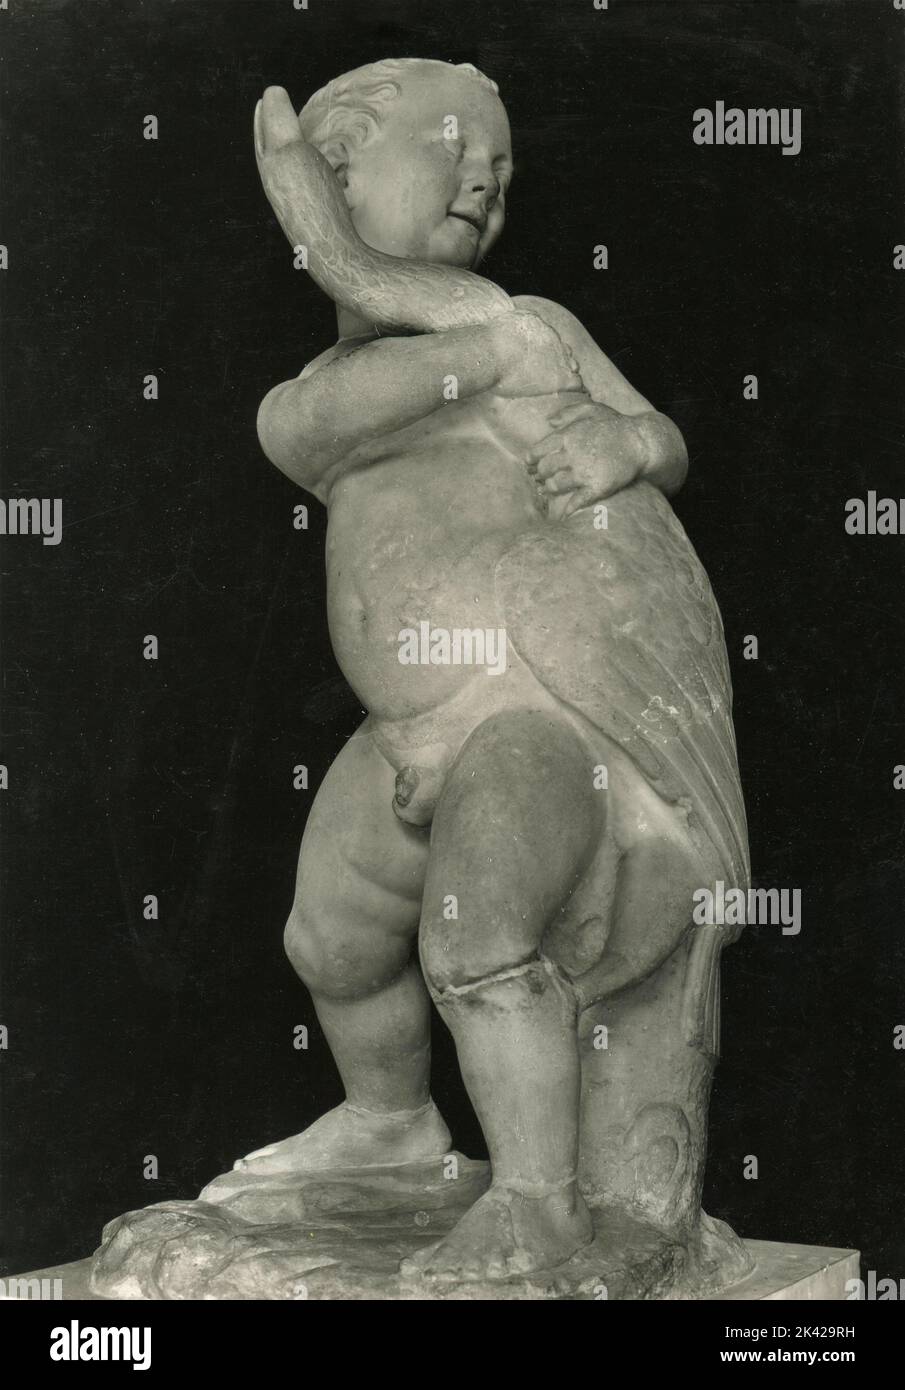 Antica statua romana di un bambino con anatra, dopo l'originale di Boethus, Museo Romano, Roma, Italia 1930s Foto Stock